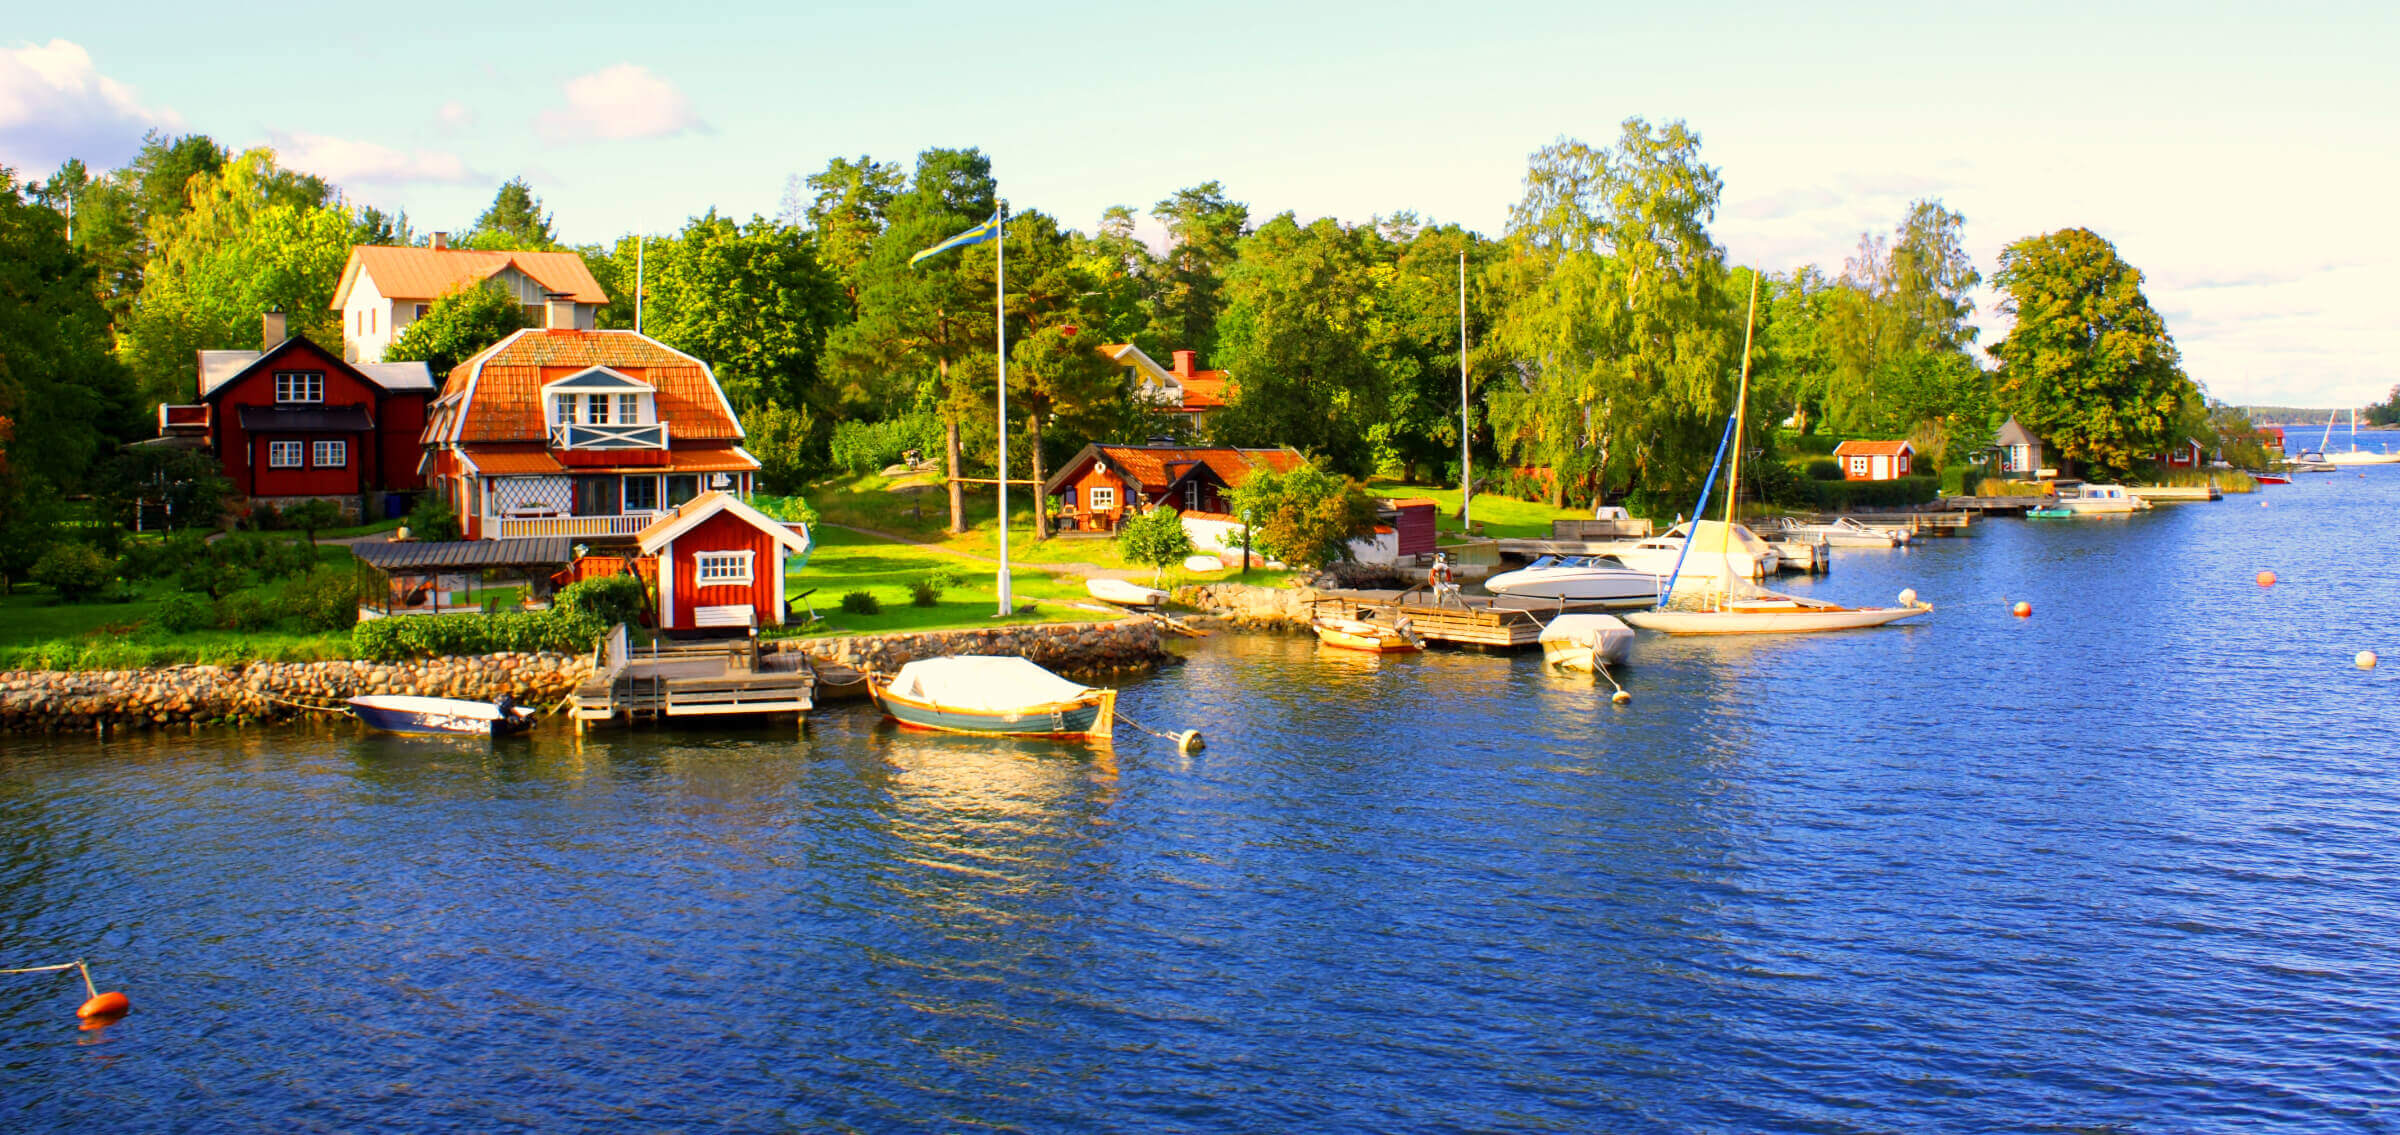 Feriehus og hytter ved sjøen nær Stockholm, Sverige